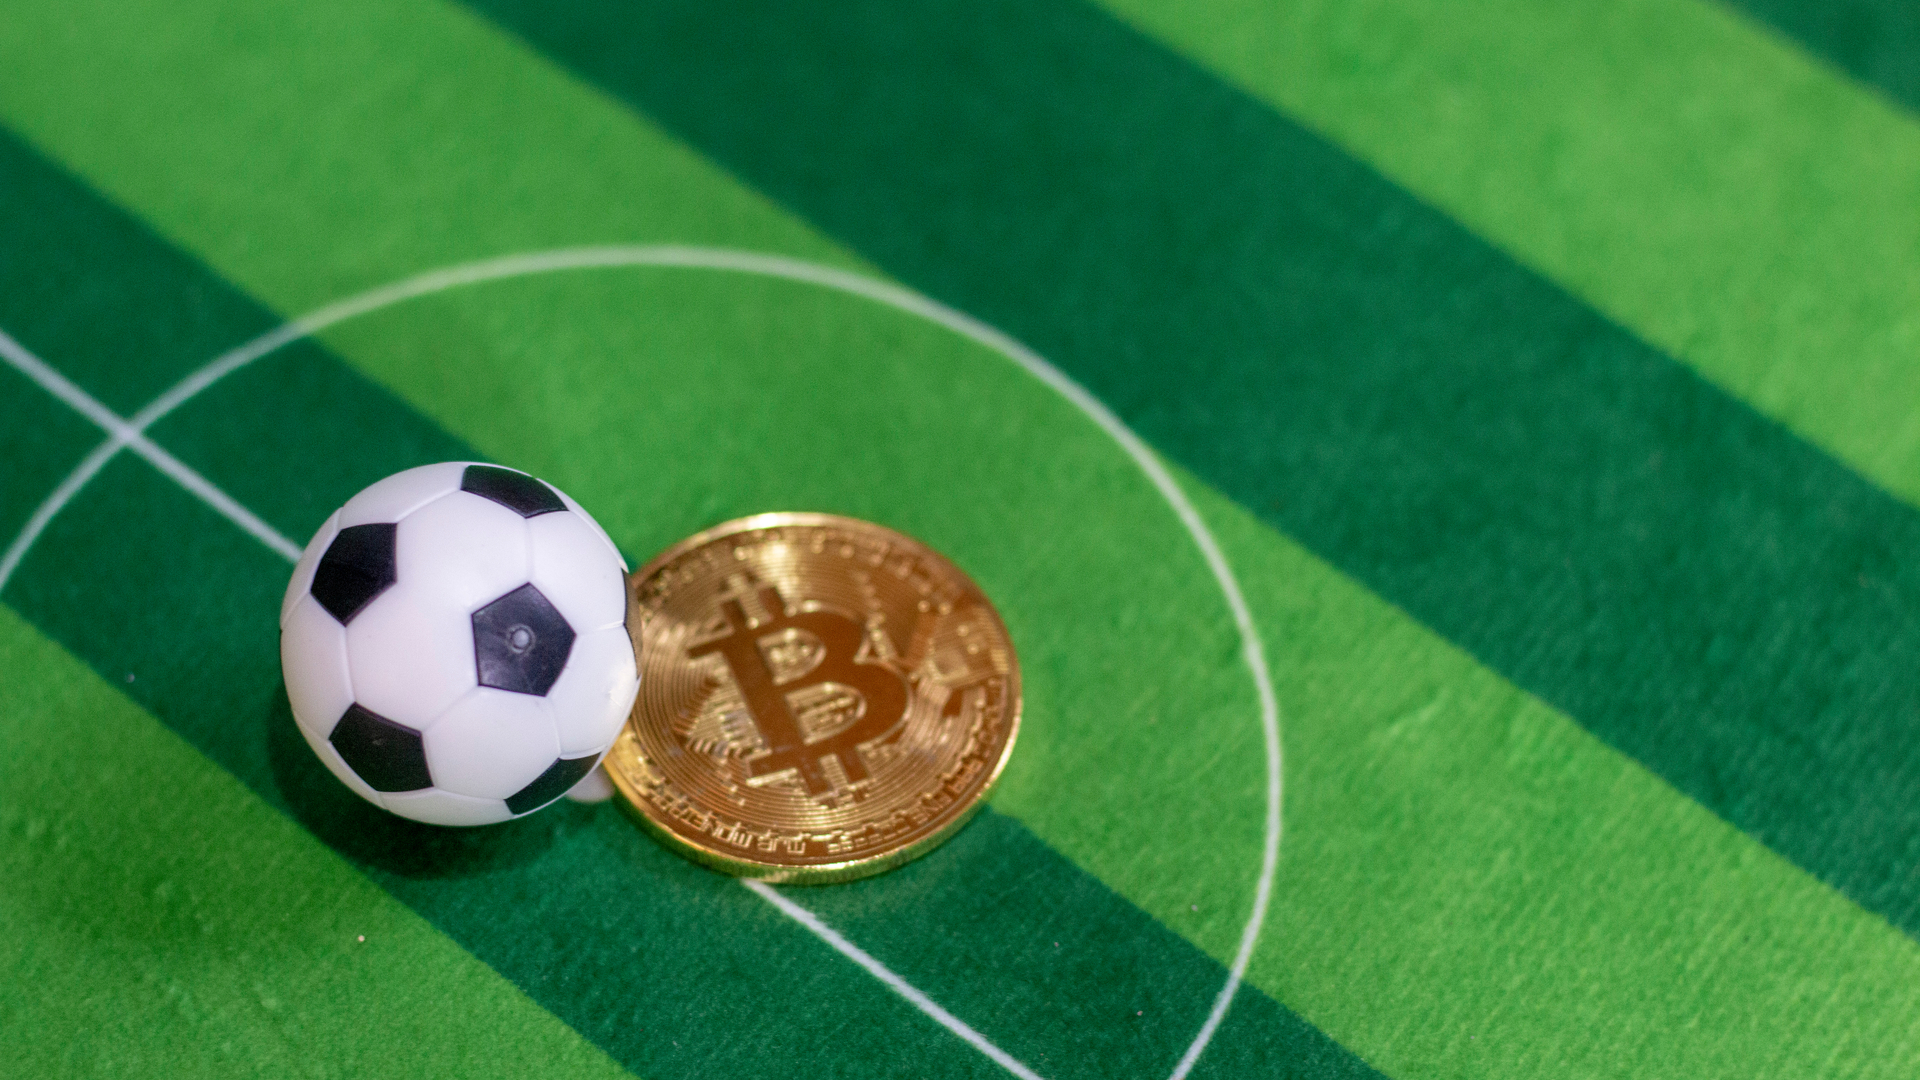 Bola de Futebol em campo e Bitcoin criptomoedas